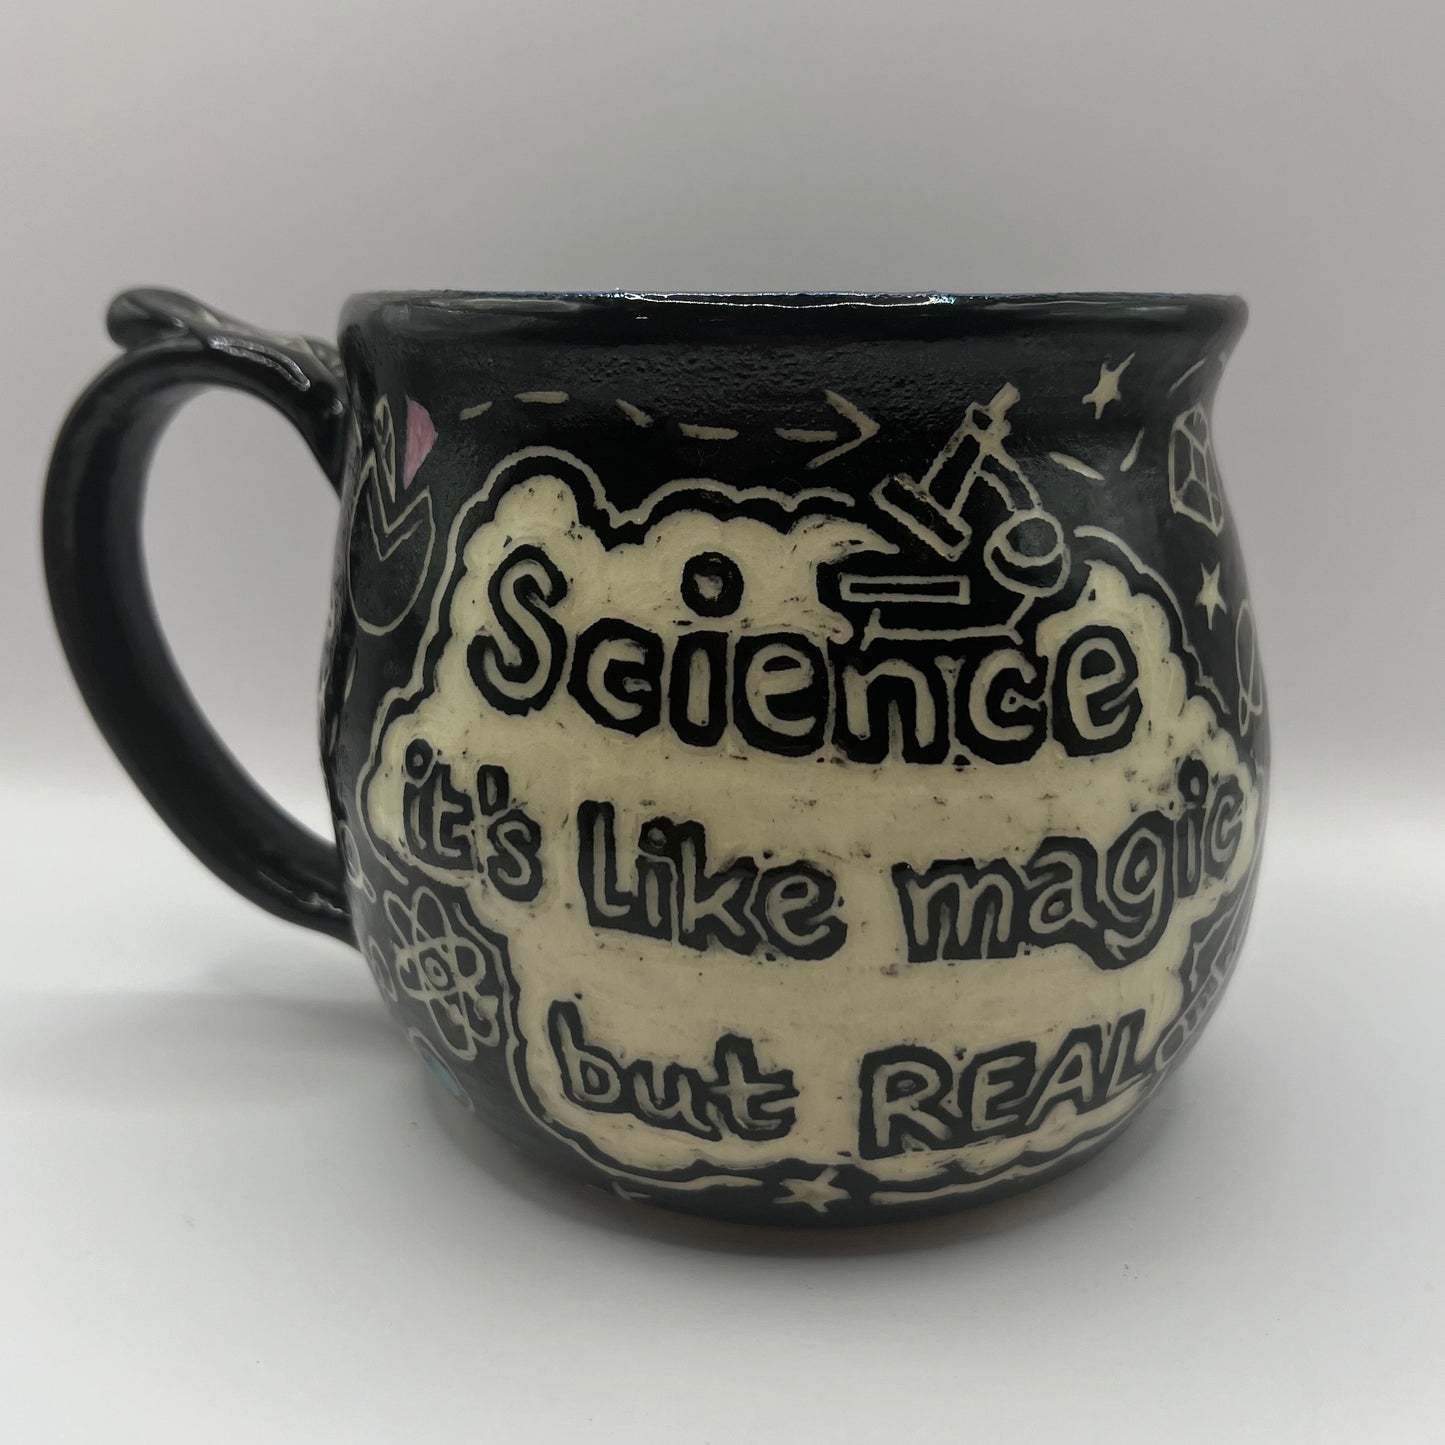 Science like Magic but Real Ceramic Mug